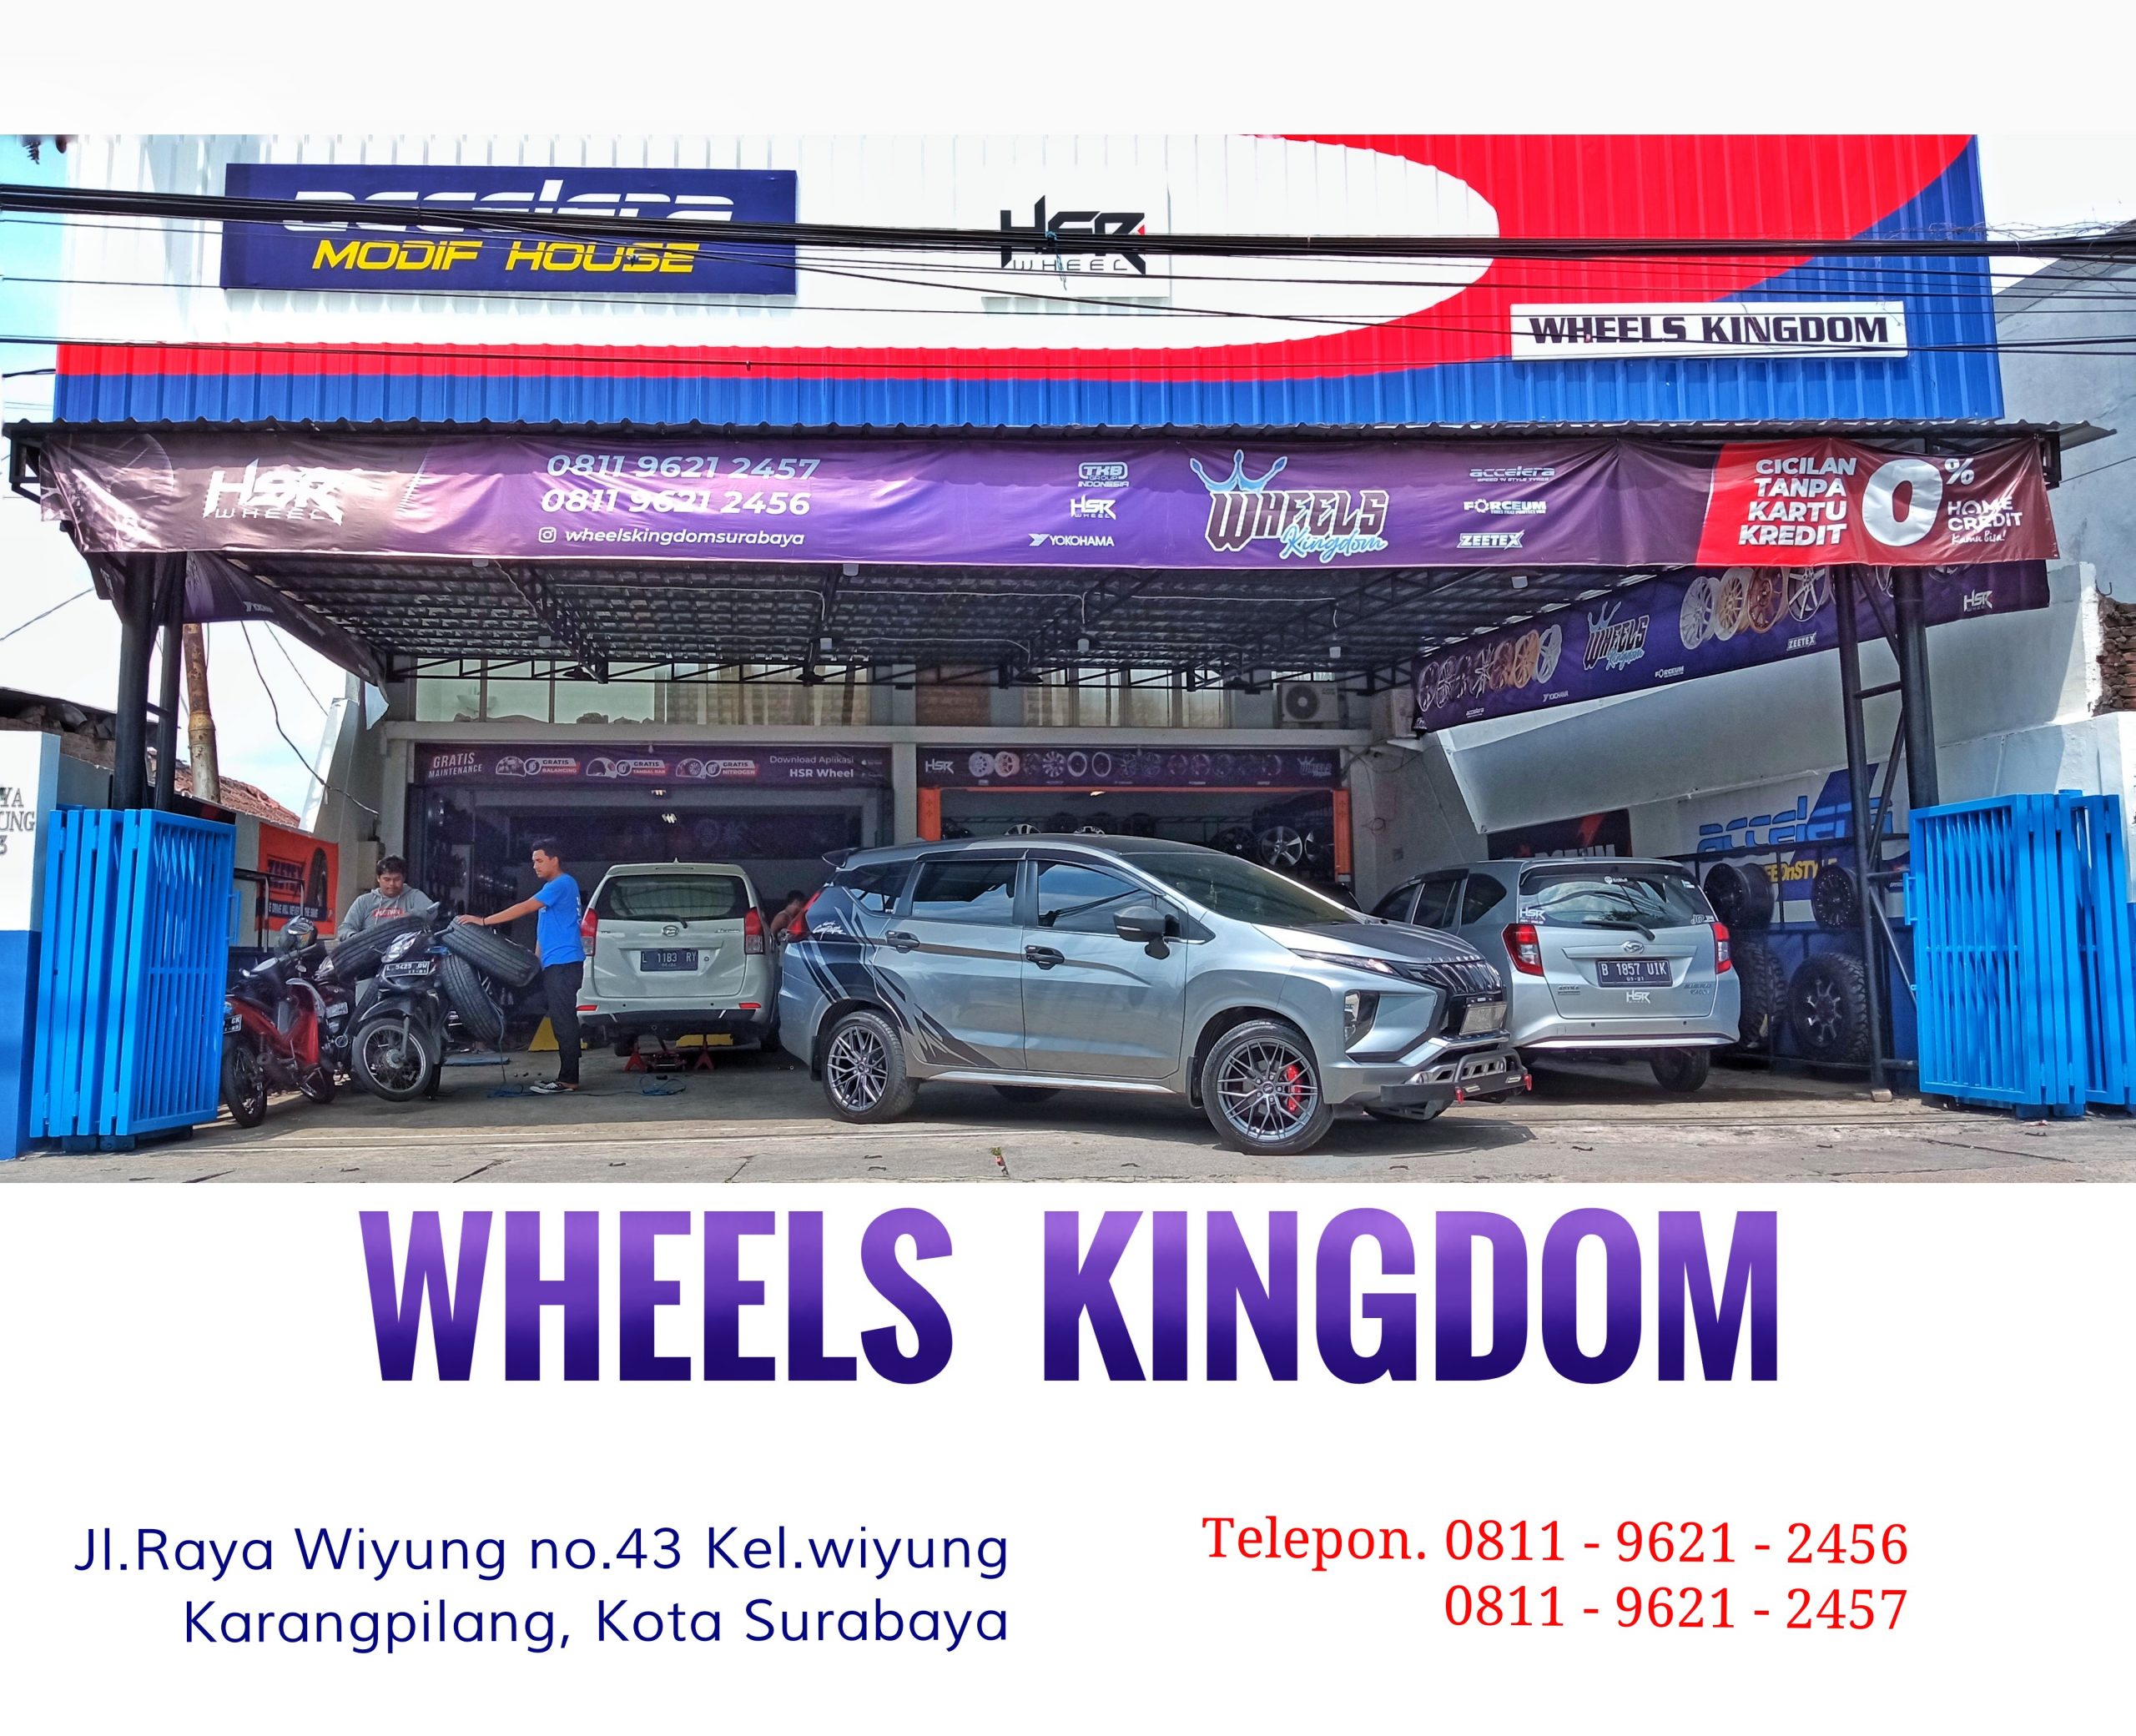 Pusat jual velg mobil dan tukar tambah di ngagel surabaya | Wheels kingdom